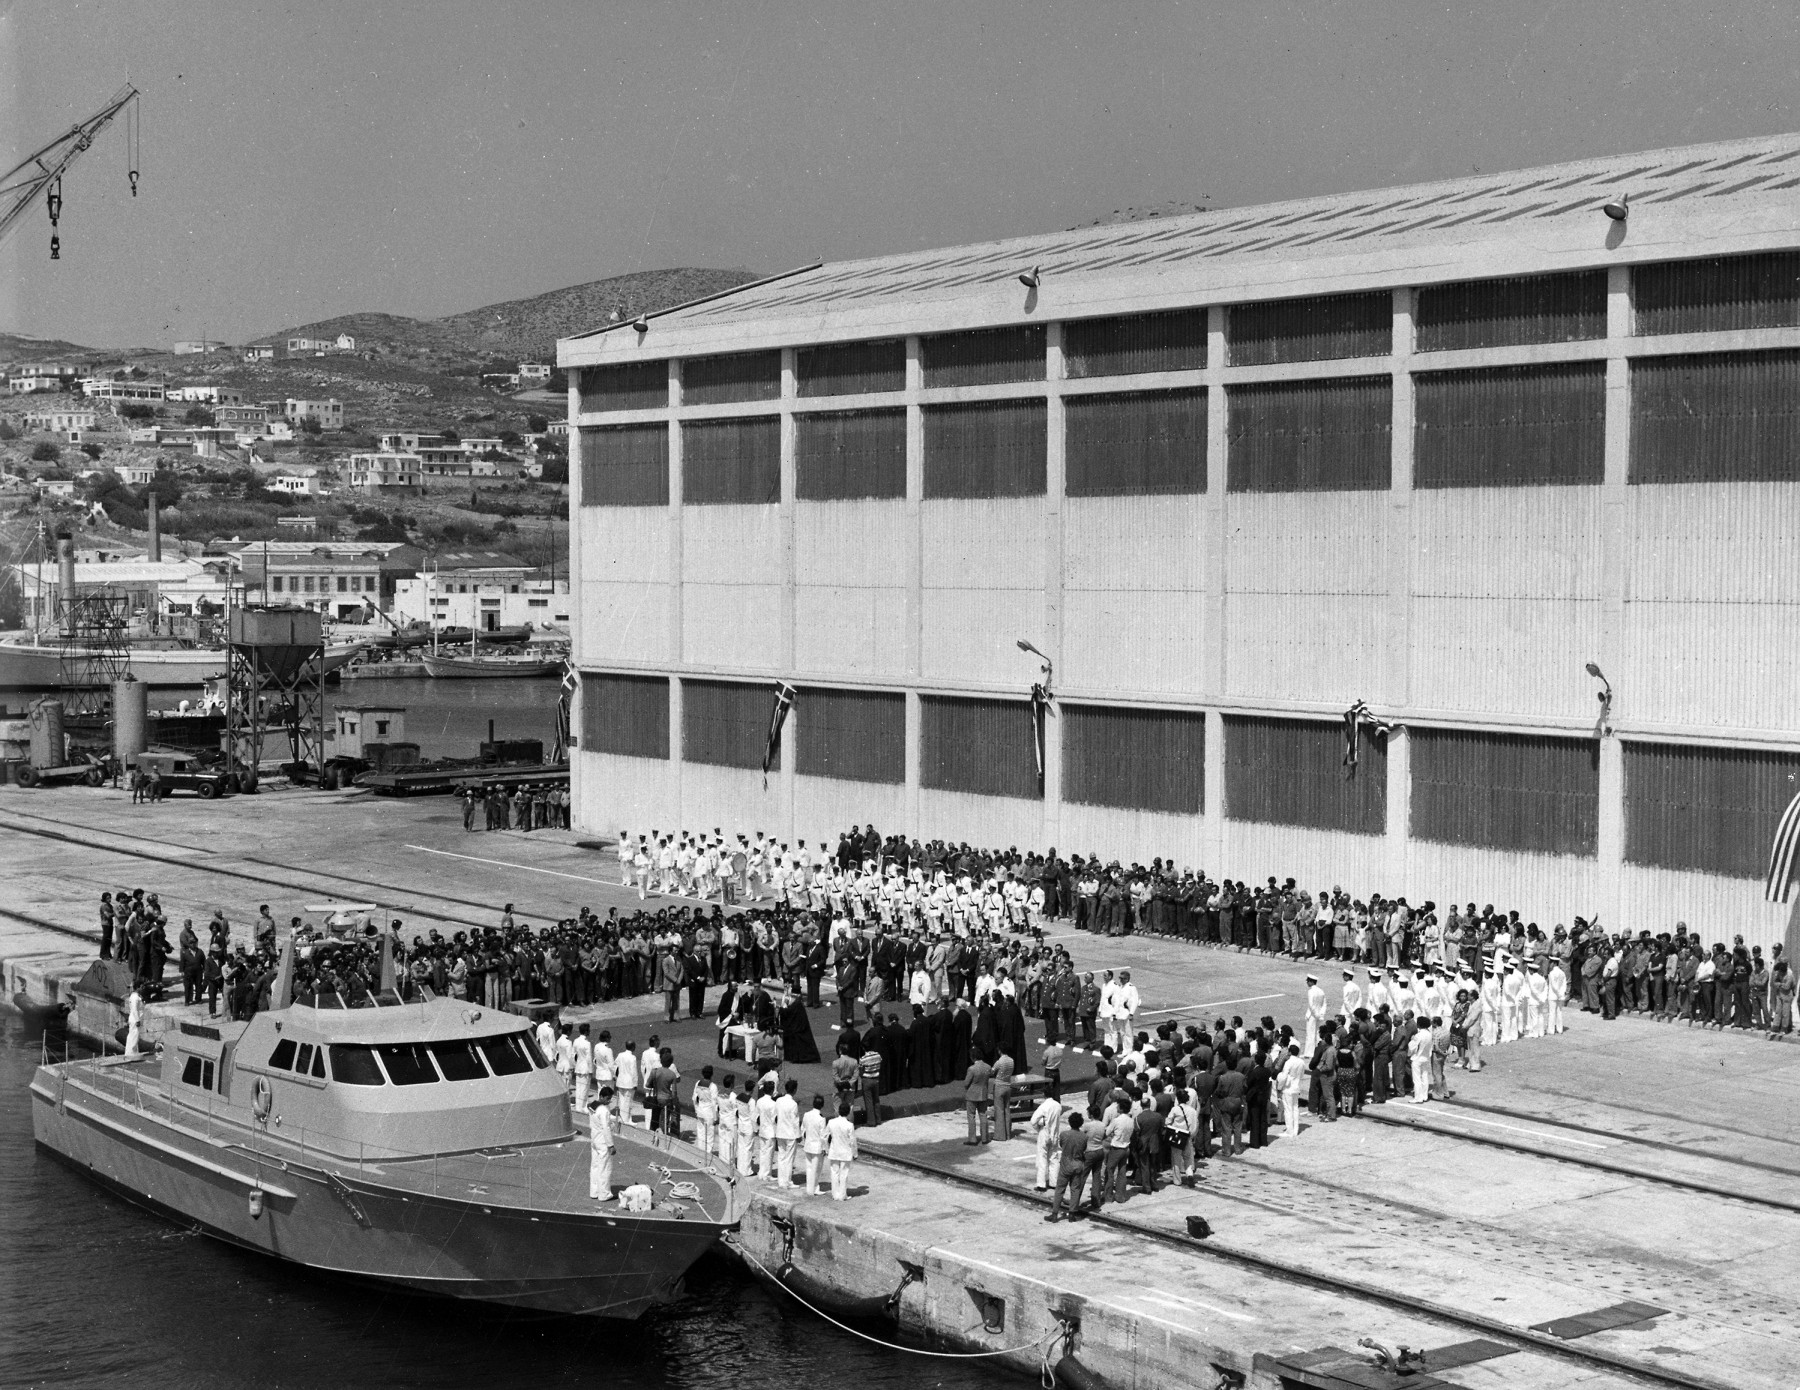 Δωρεά ταχύπλοου σκάφους στο πολεμικό ναυτικό από την οικογένεια Ν.Ι. Γουλανδρή, 1977 (1)